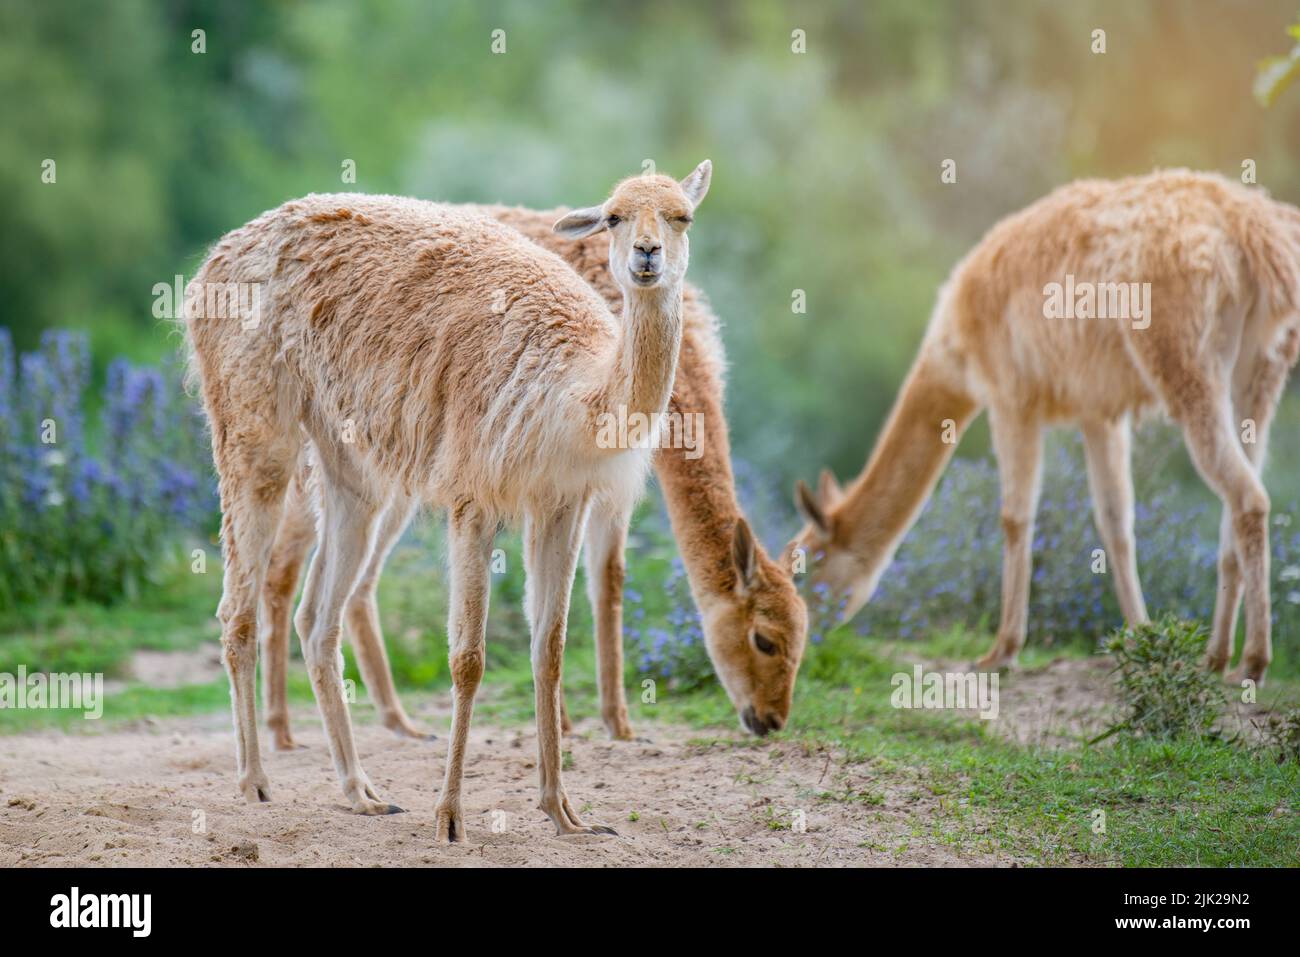 Vicuna. Diverse vicune si levano in piedi su un hillock nel sole di sera e mangiano l'erba. Un animale simile a un lama o alpaca. Foto Stock